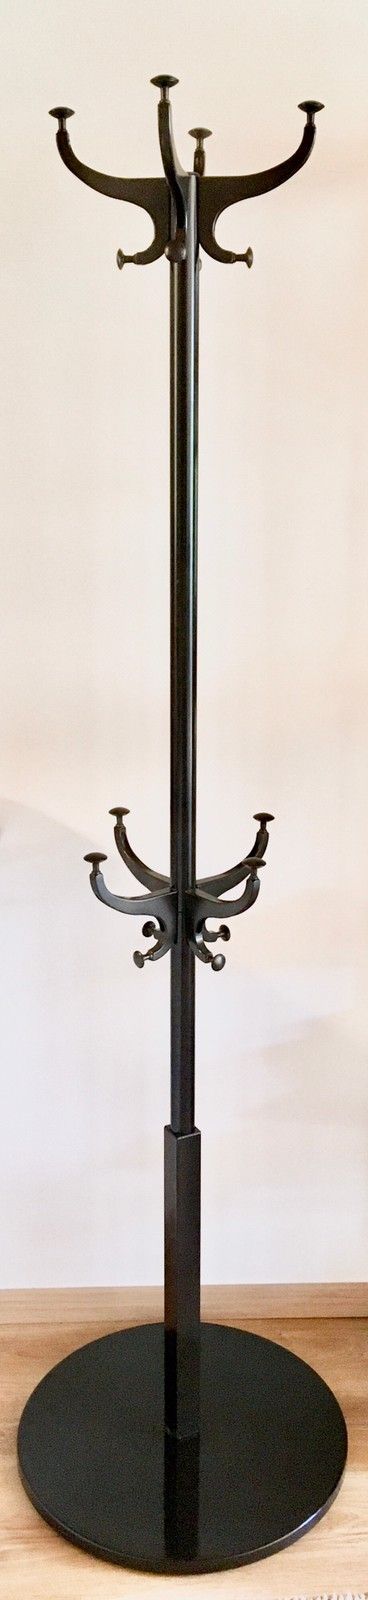 IKEA Hemnes | Coat Stand in Black Steel (185 cm) | -vaateteline musta terästä